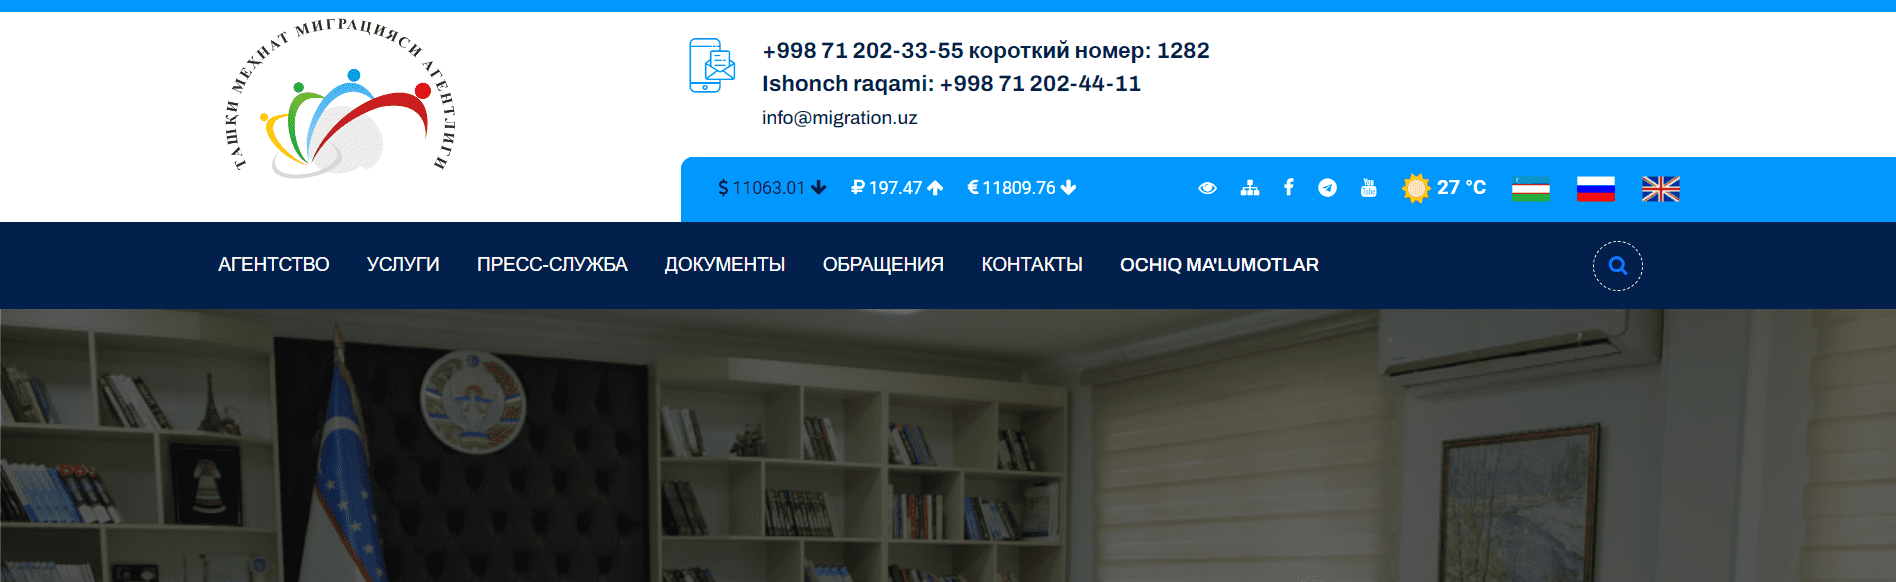 Агентство по внешней трудовой миграции Республики Узбекистан (migration.uz) - официальный сайт